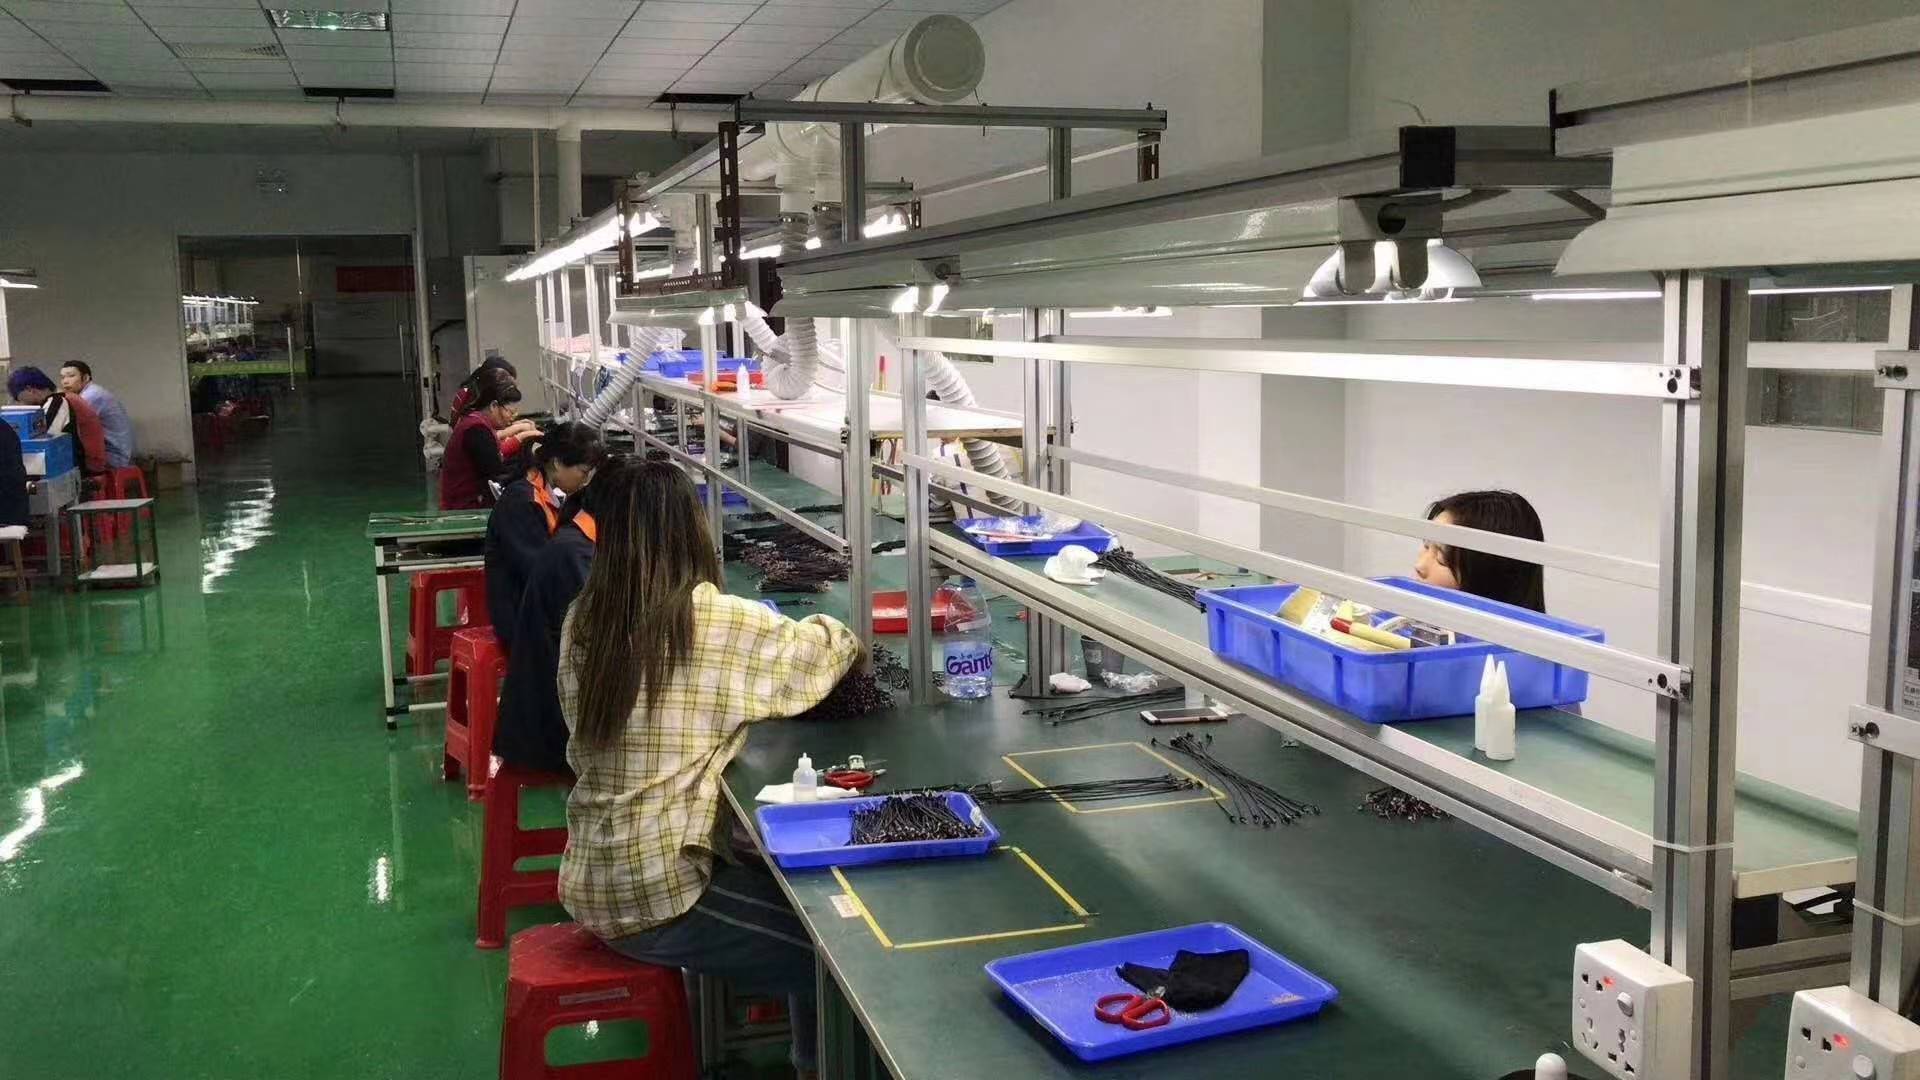 广州时尚兴隆玩具厂图片